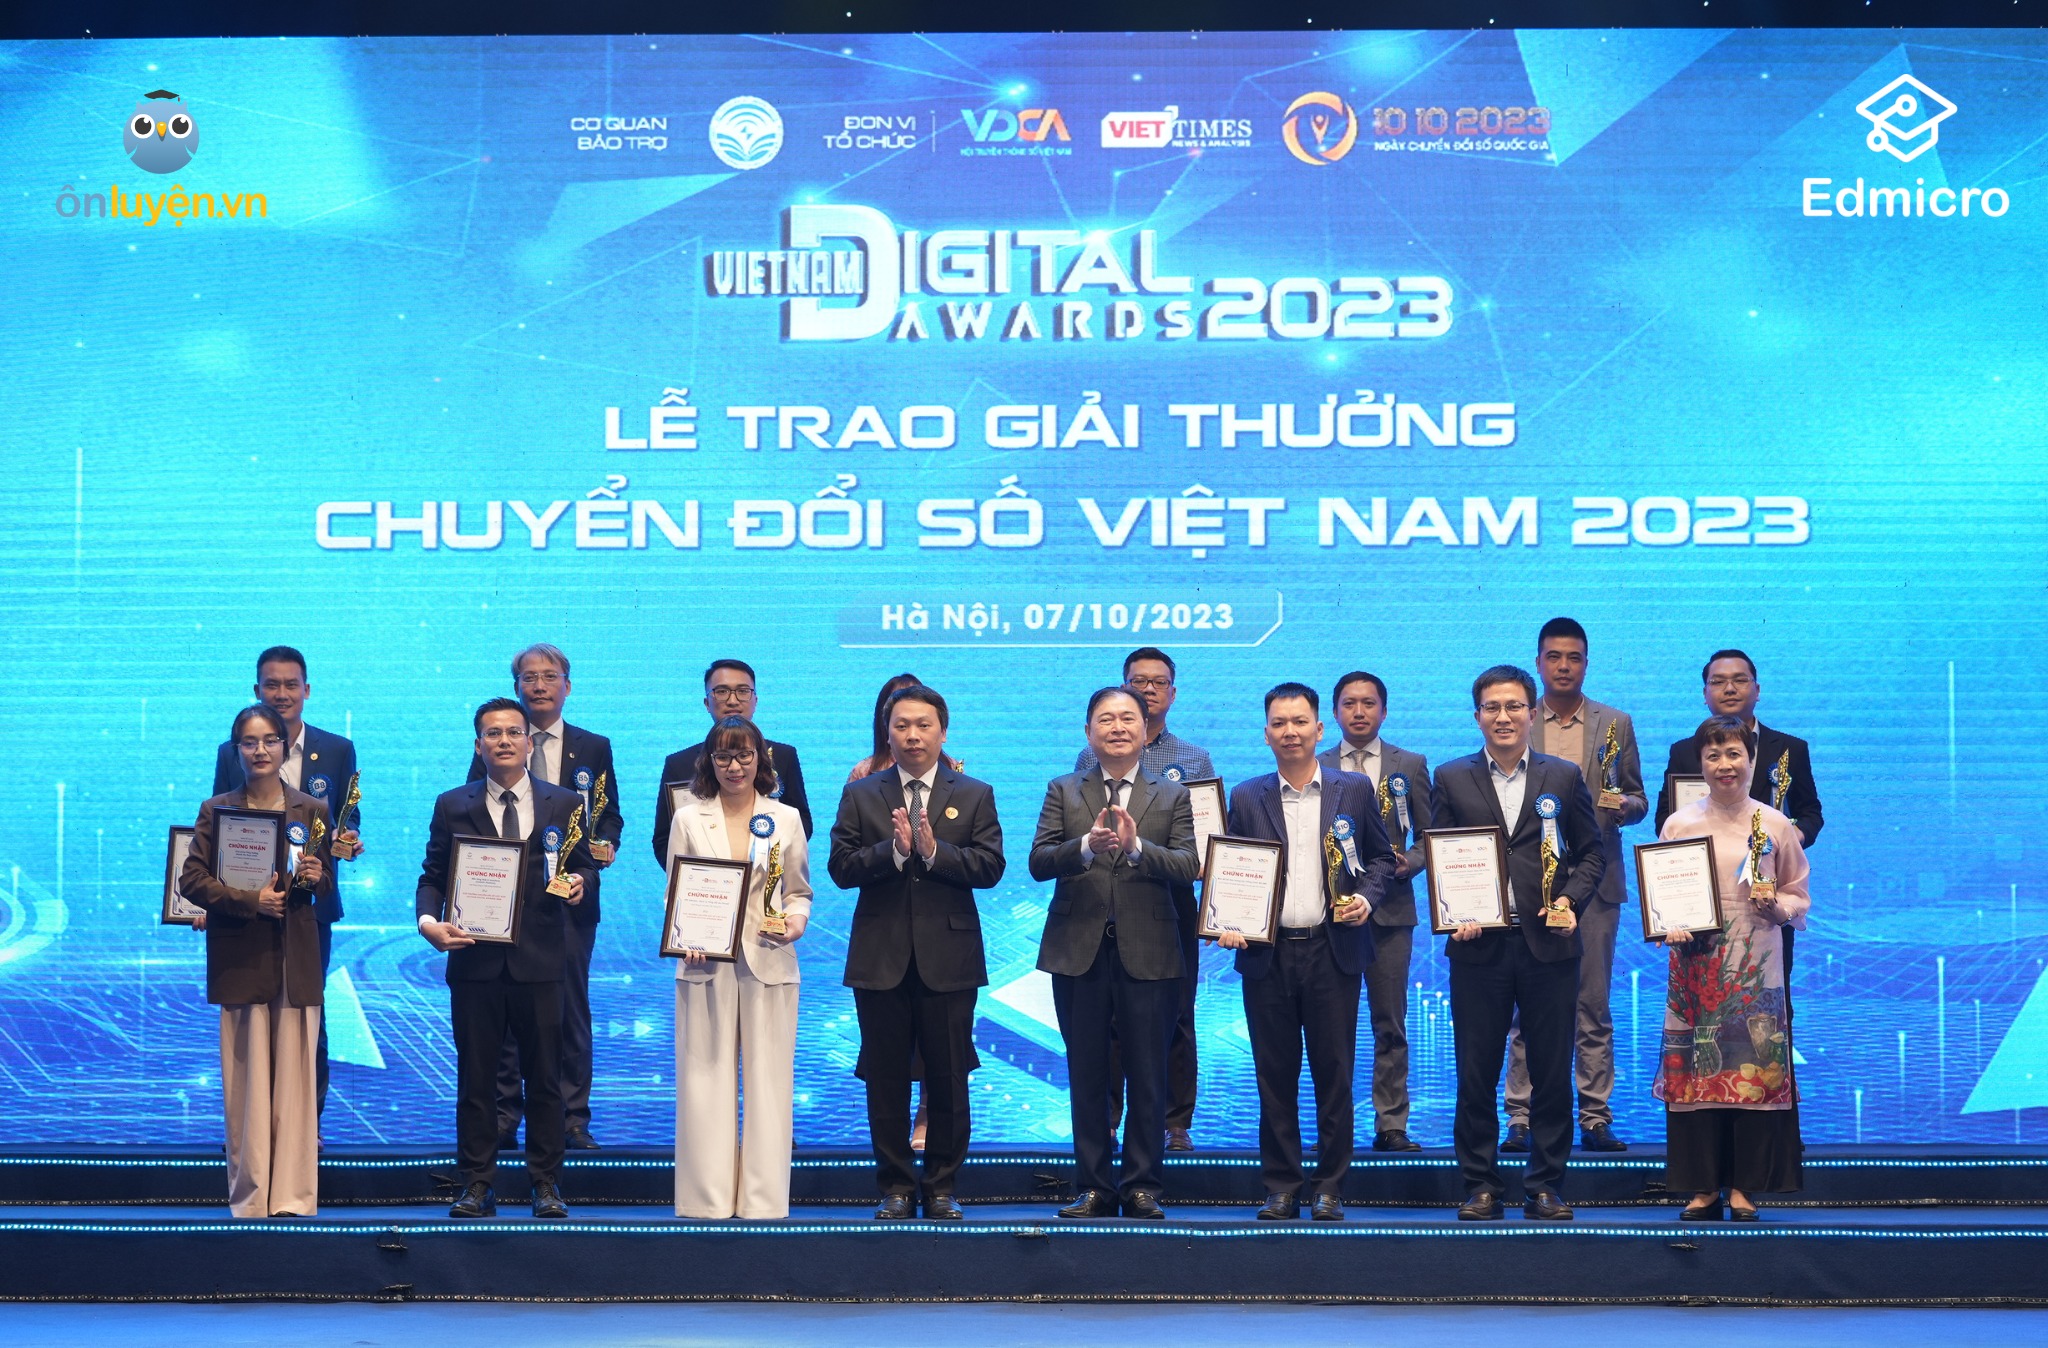 Chương Trình Giáo Dục Trực Tuyến Onluyen.Vn Của Edmicro Giành Giải Thưởng Quốc Gia Về Chuyển Đổi Số – “Vietnam Digital Awards” 2023